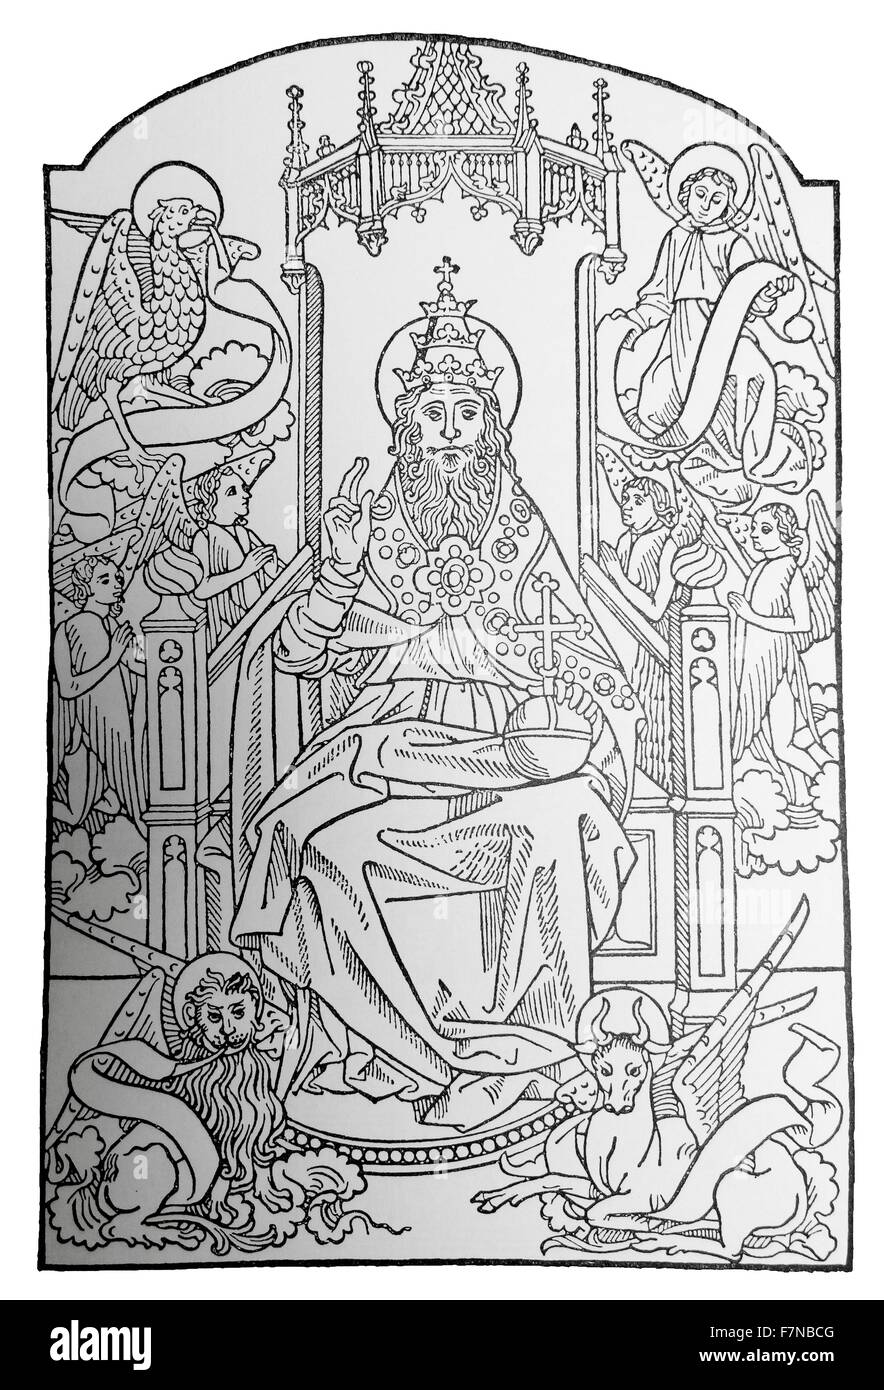 Jean du pre; le pere eternel 1481 xilografia di " Dio in trono" Foto Stock